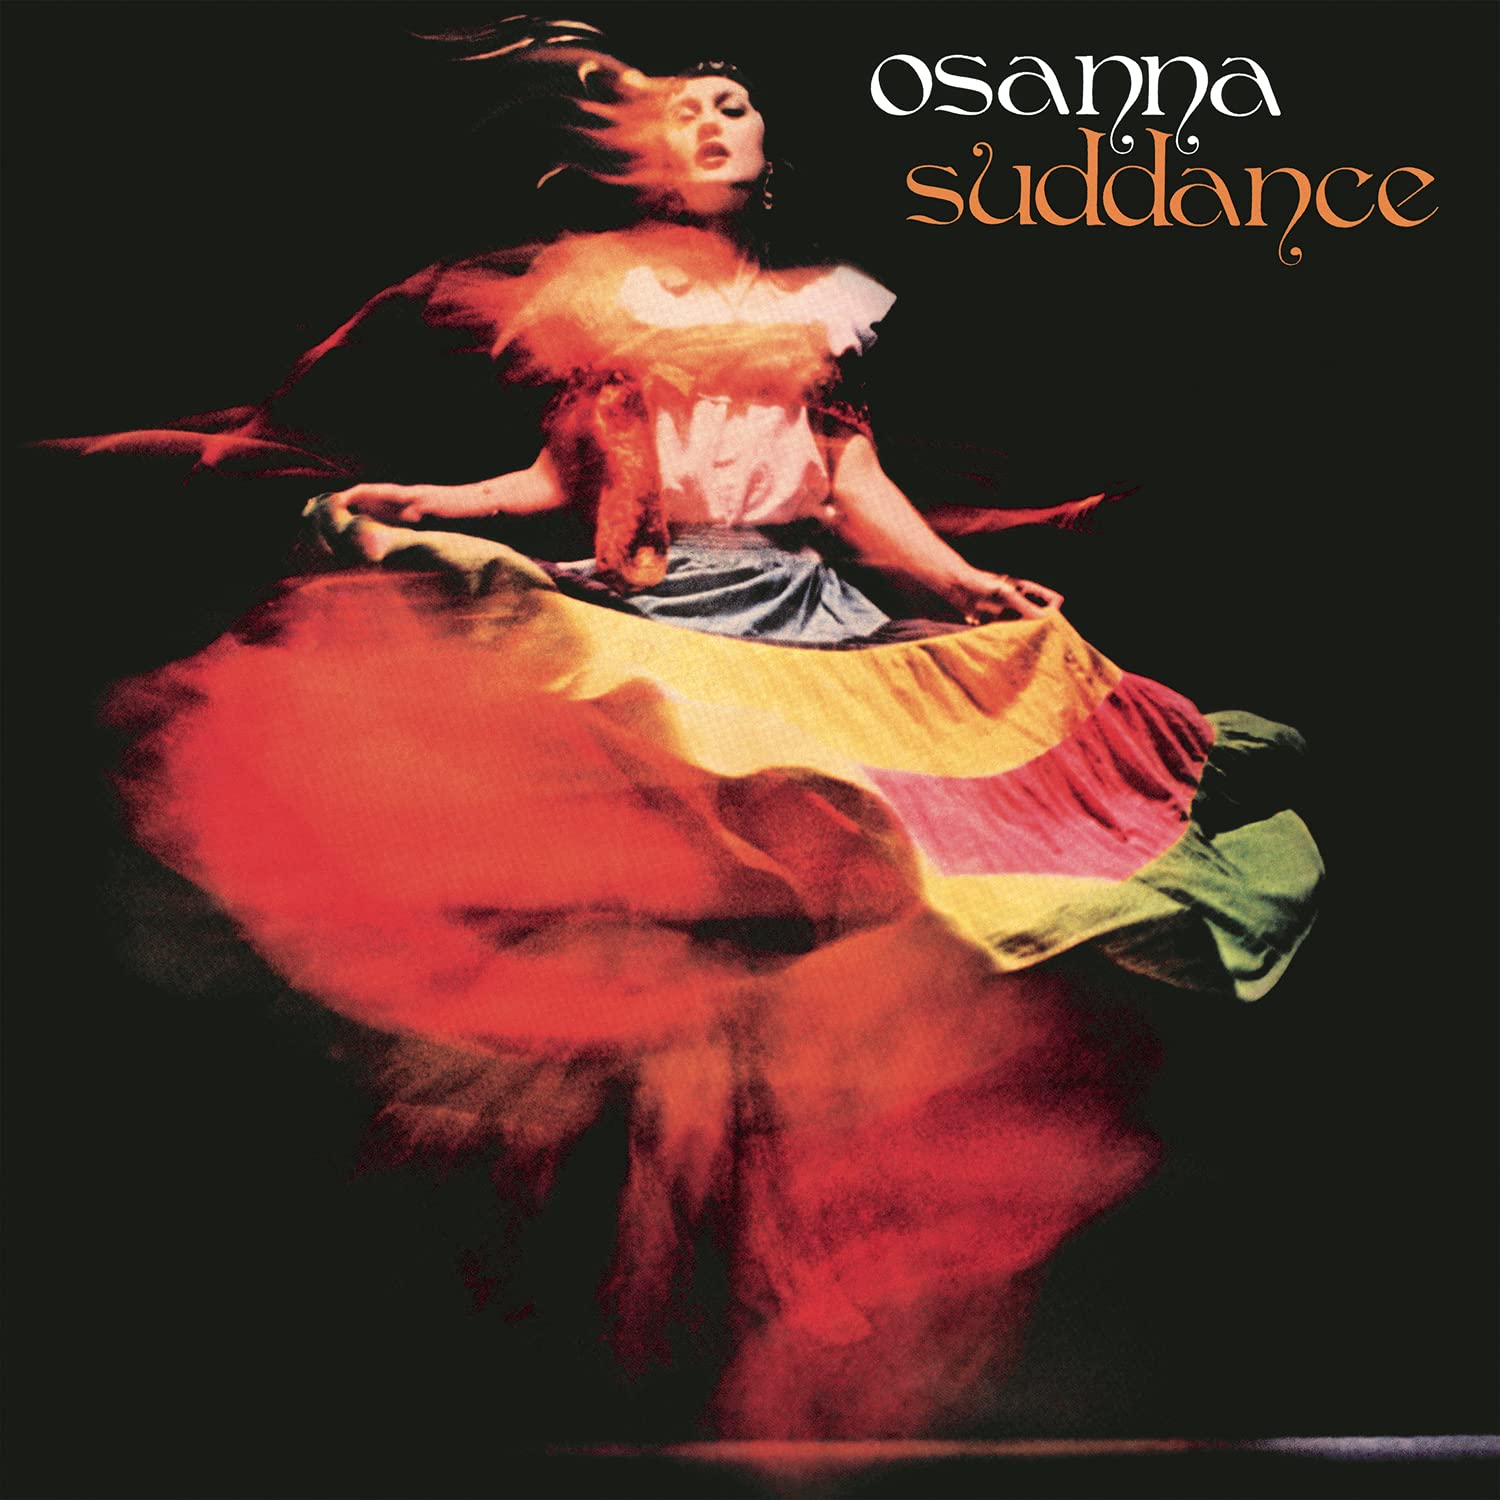 Vinile Osanna - Suddance Vinyl NUOVO SIGILLATO EDIZIONE DEL SUBITO DISPONIBILE arancione